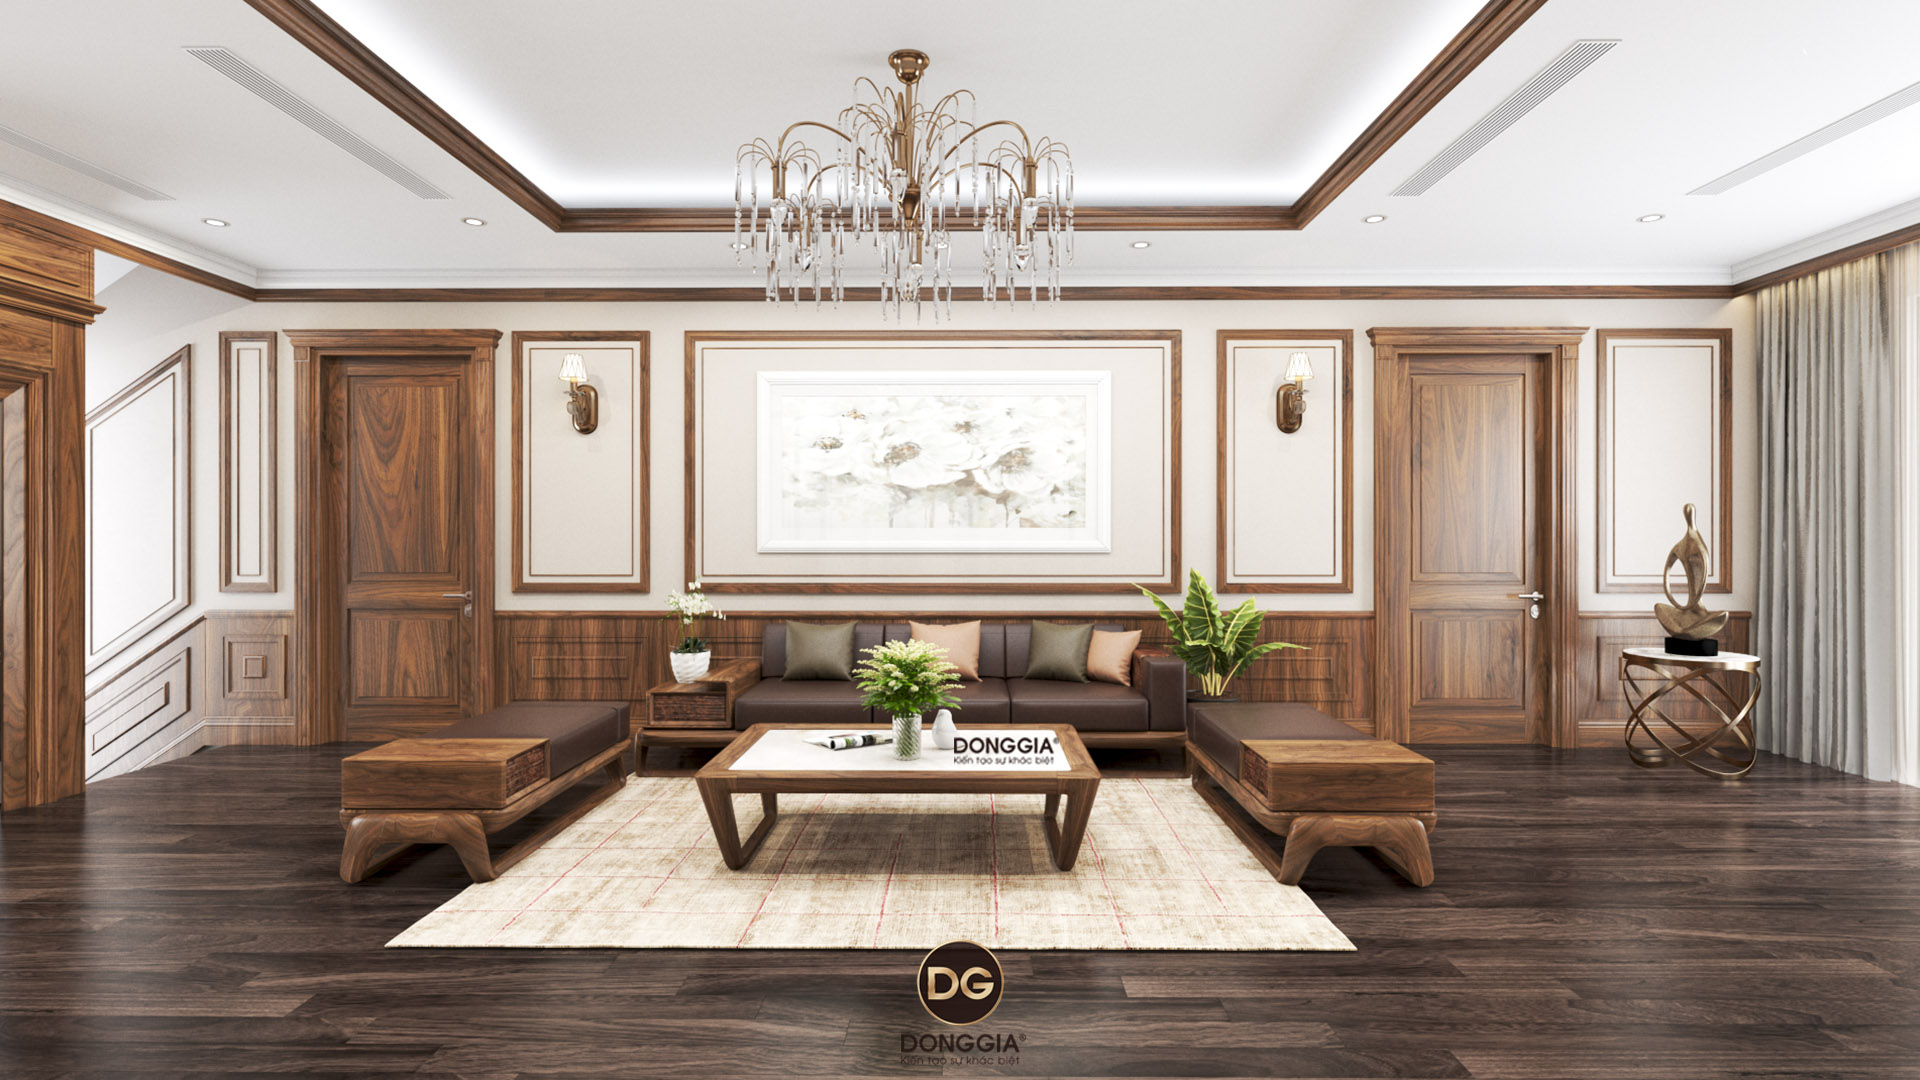 Những mẫu trang trí phòng khách đẹp cho nhà biệt thự hiện đại 2019